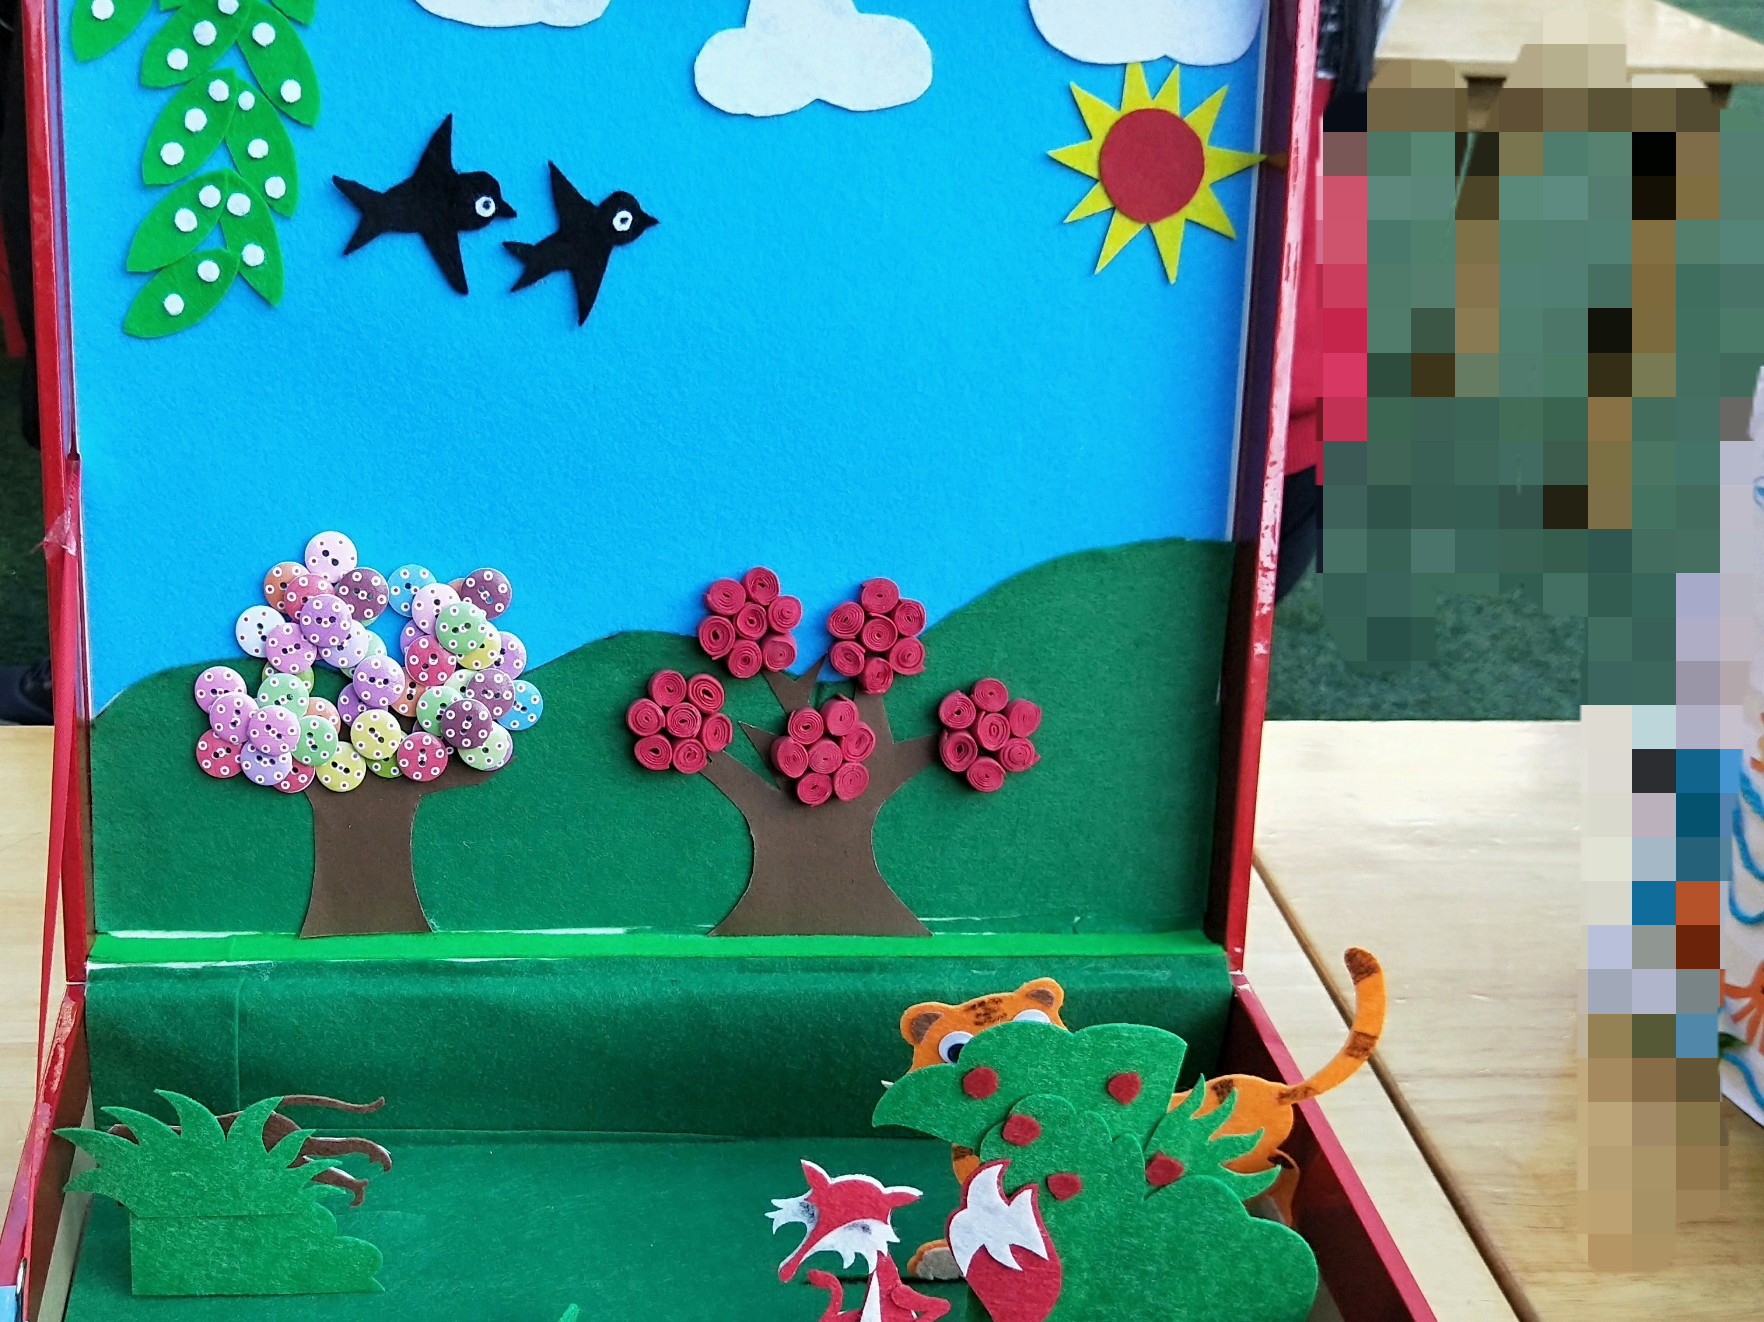 小小故事盒 承载满满爱——记洗墨池幼儿园小班年段亲子制作活动